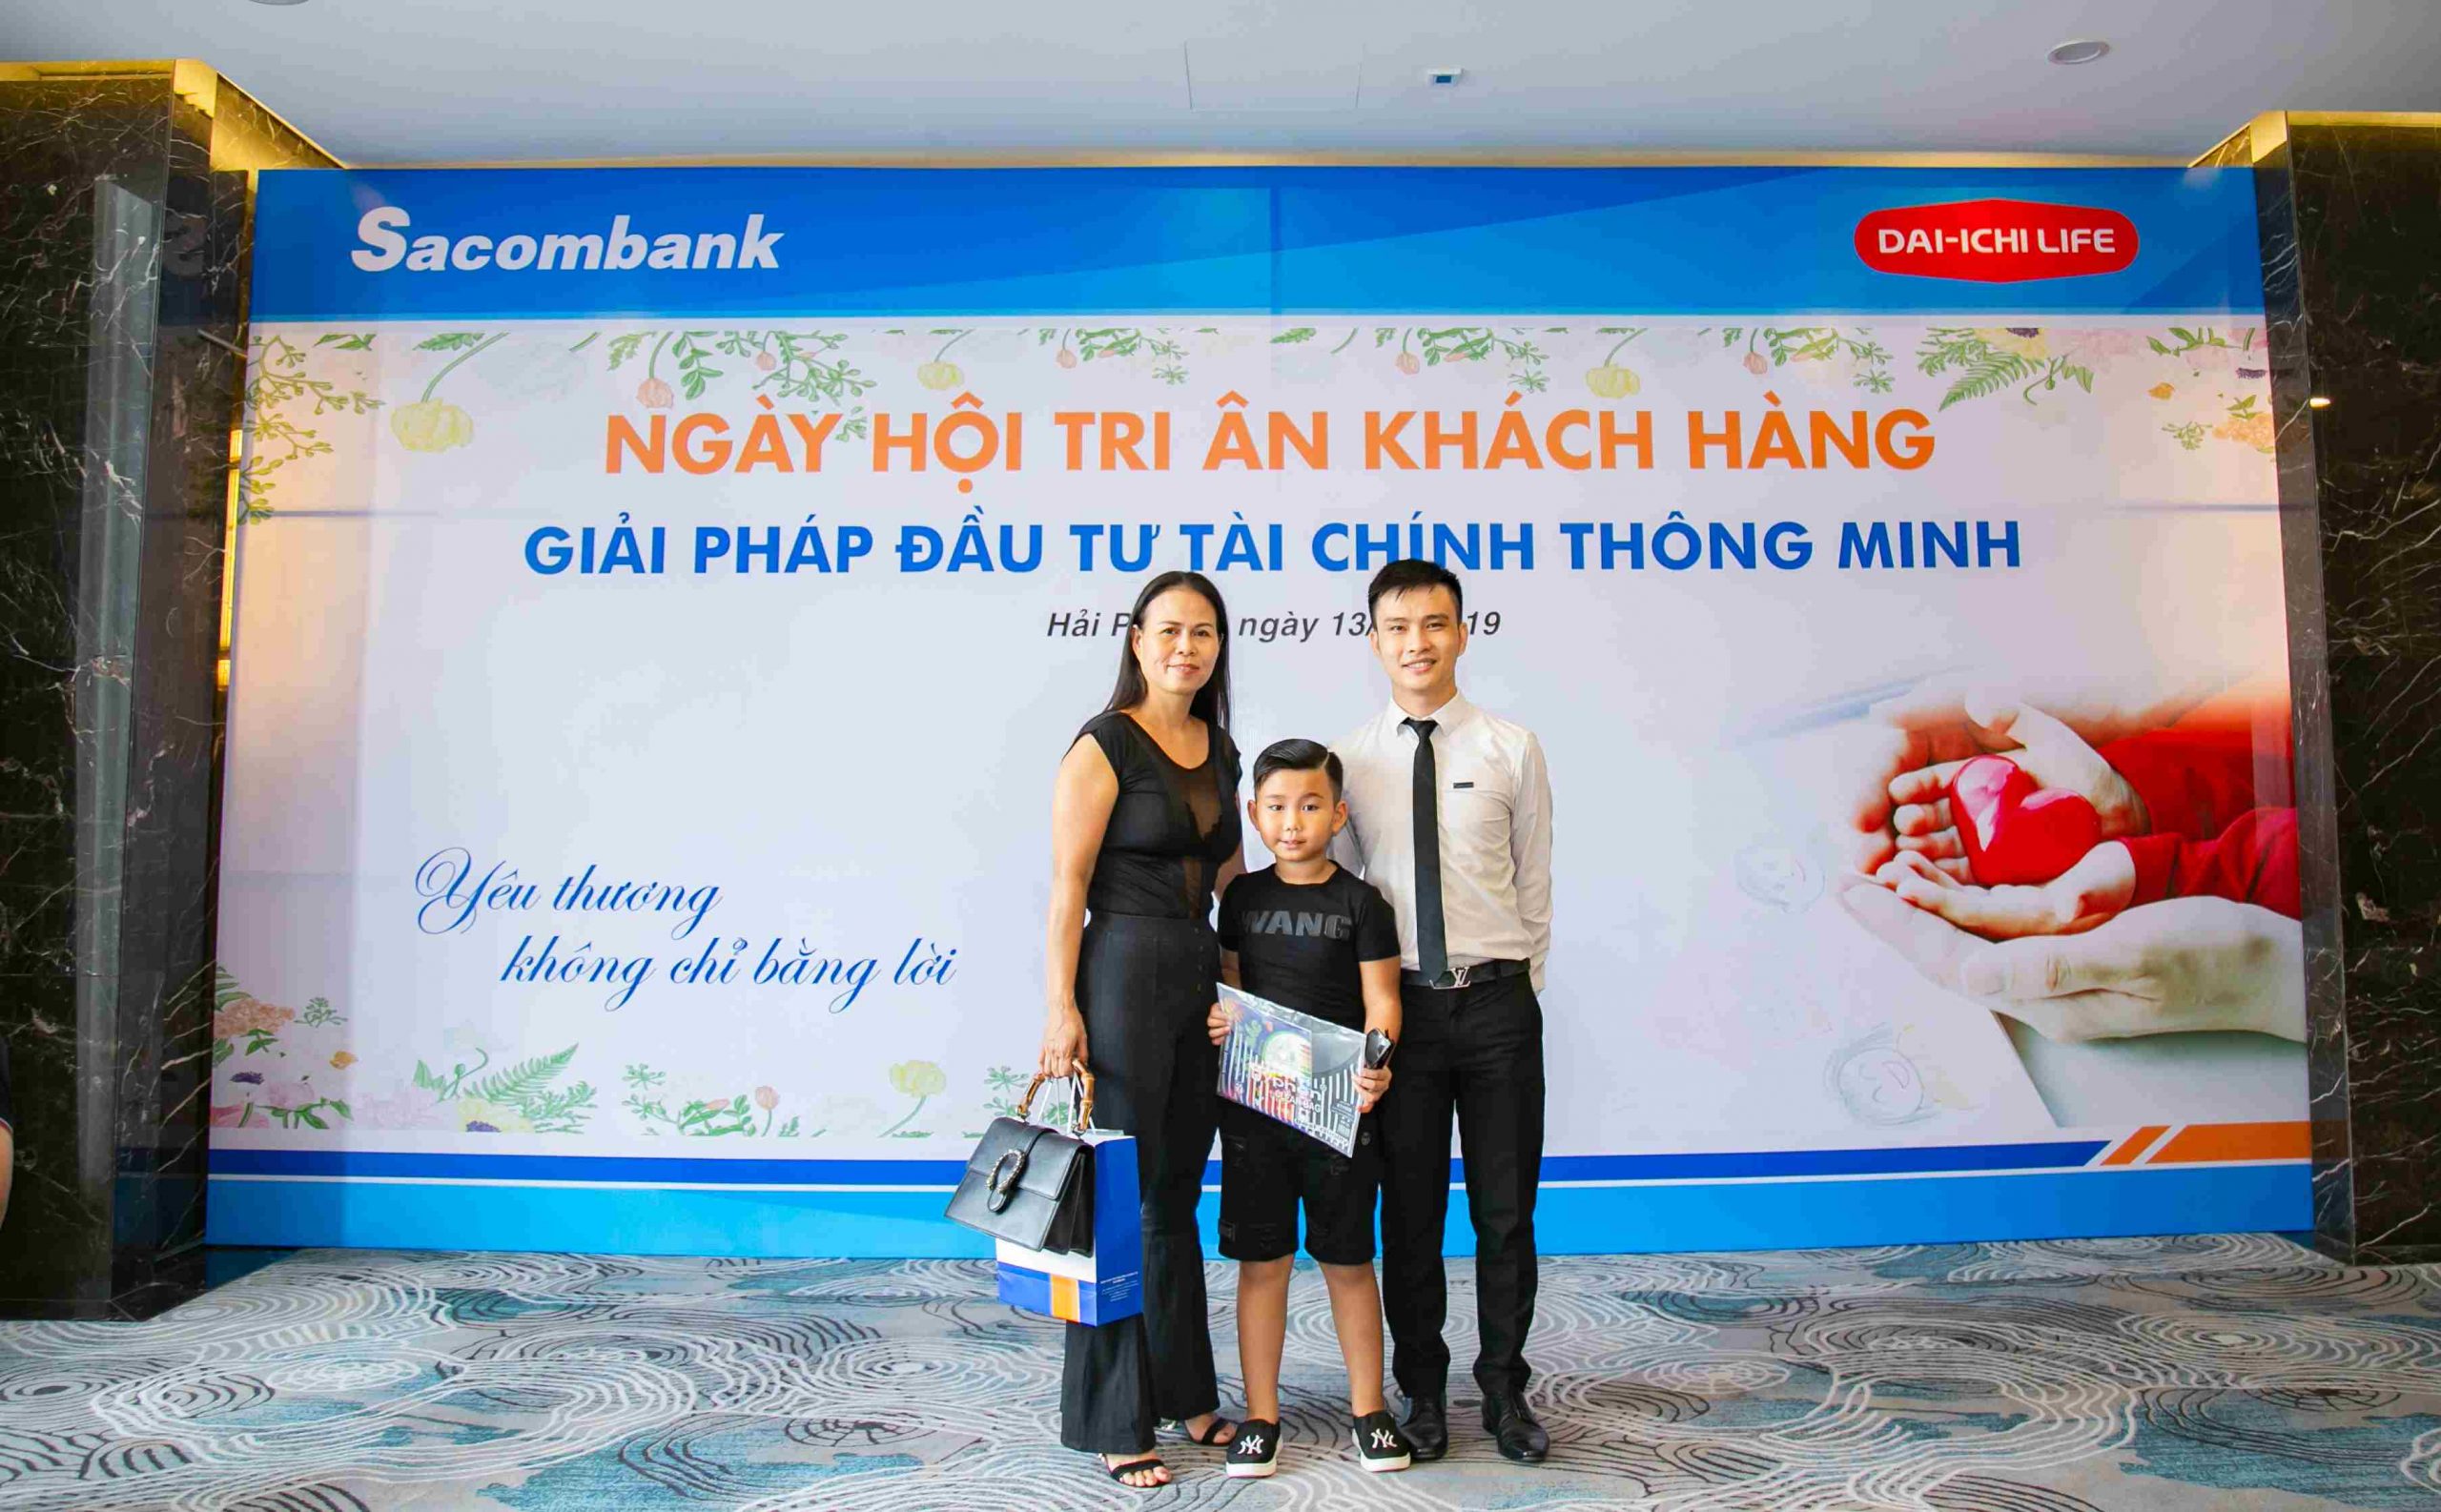 Chụp ảnh hội nghị tri ân khách hàng Sacombank Hải Phòng